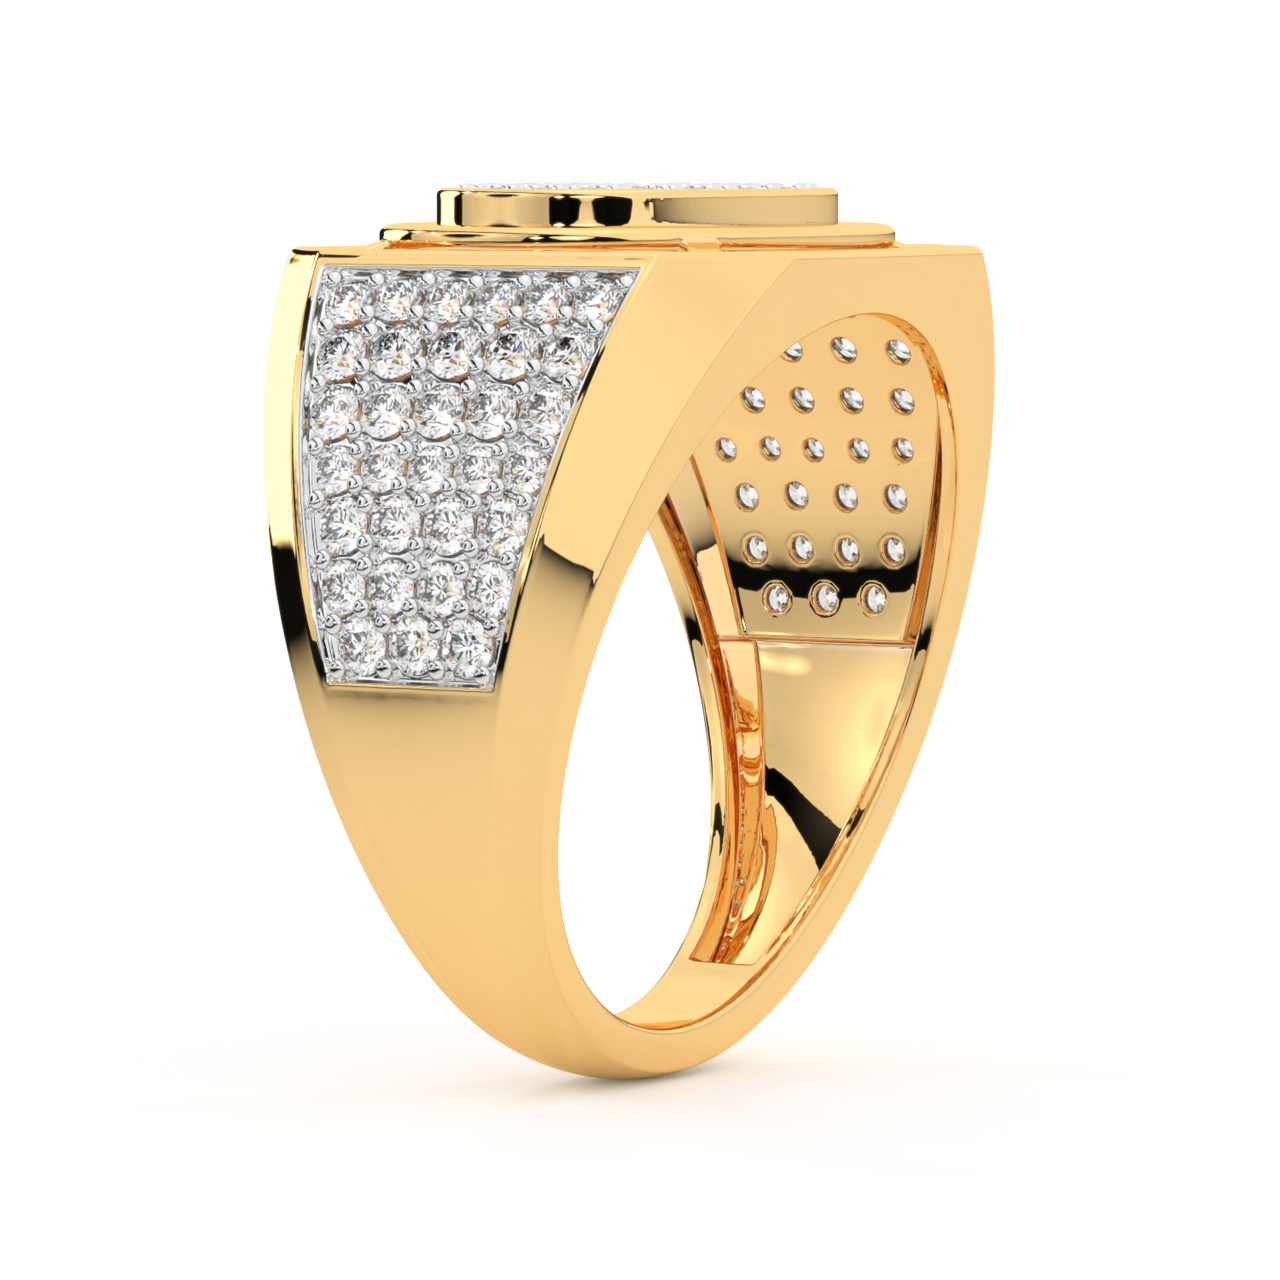 finn ring - men's gold wedding band, moissanite ring – J Hollywood Designs